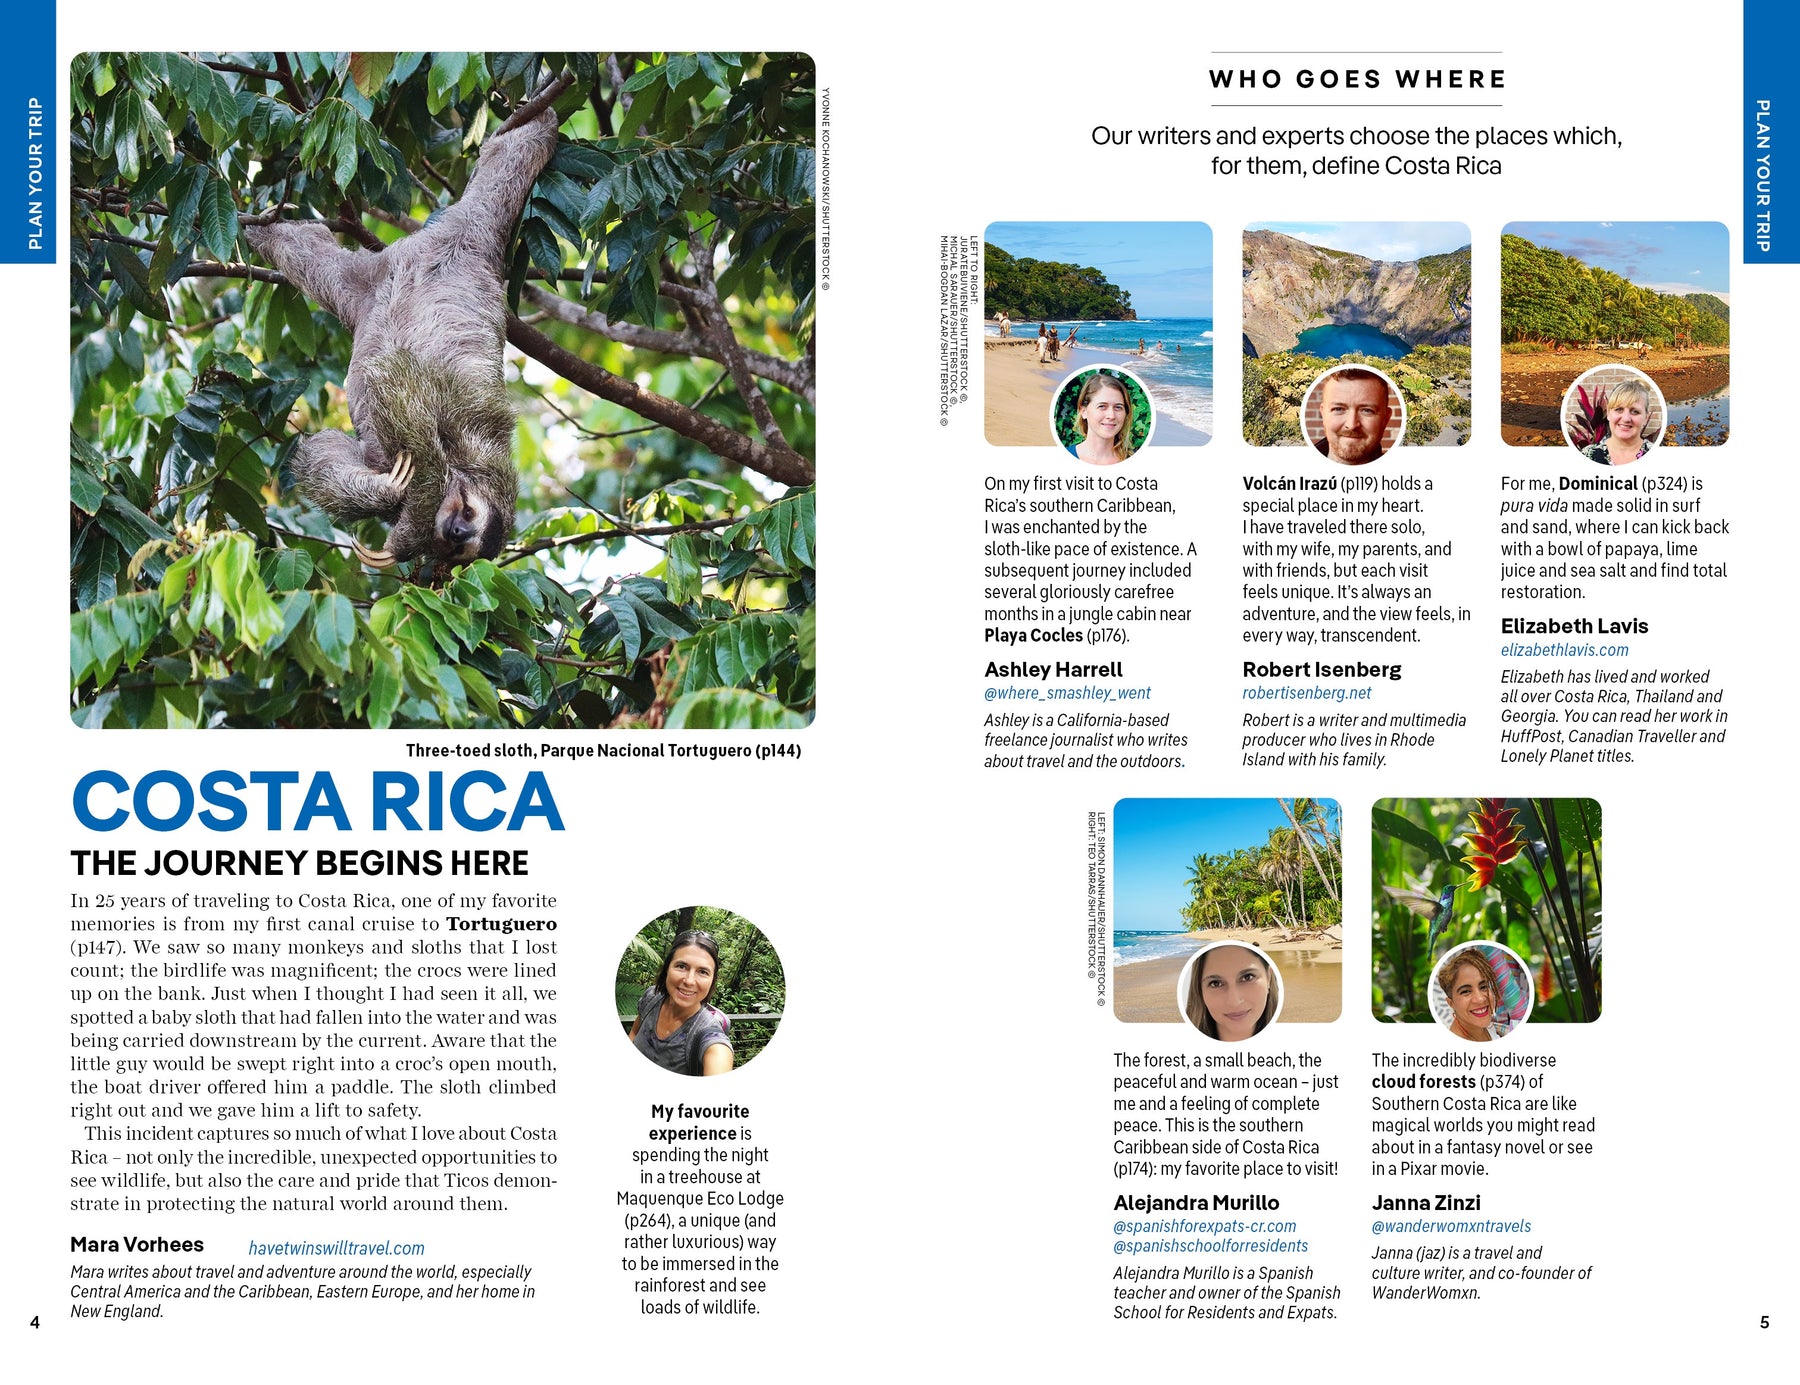 Costa Rica preview